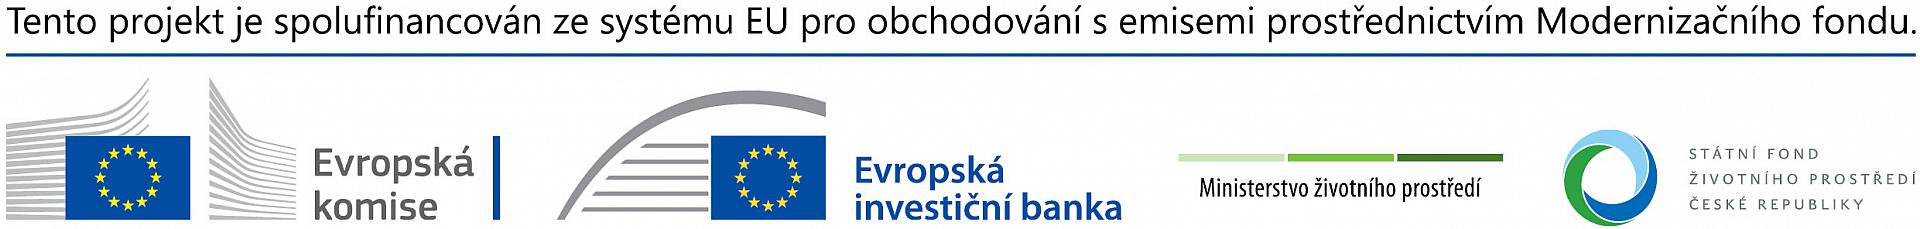 Banner publicity Modernizační fond, zdroj: https://www.sfzp.cz/dotace-a-pujcky/modernizacni-fond/povinna-publicita/, foto: Štěpánka Kučerová